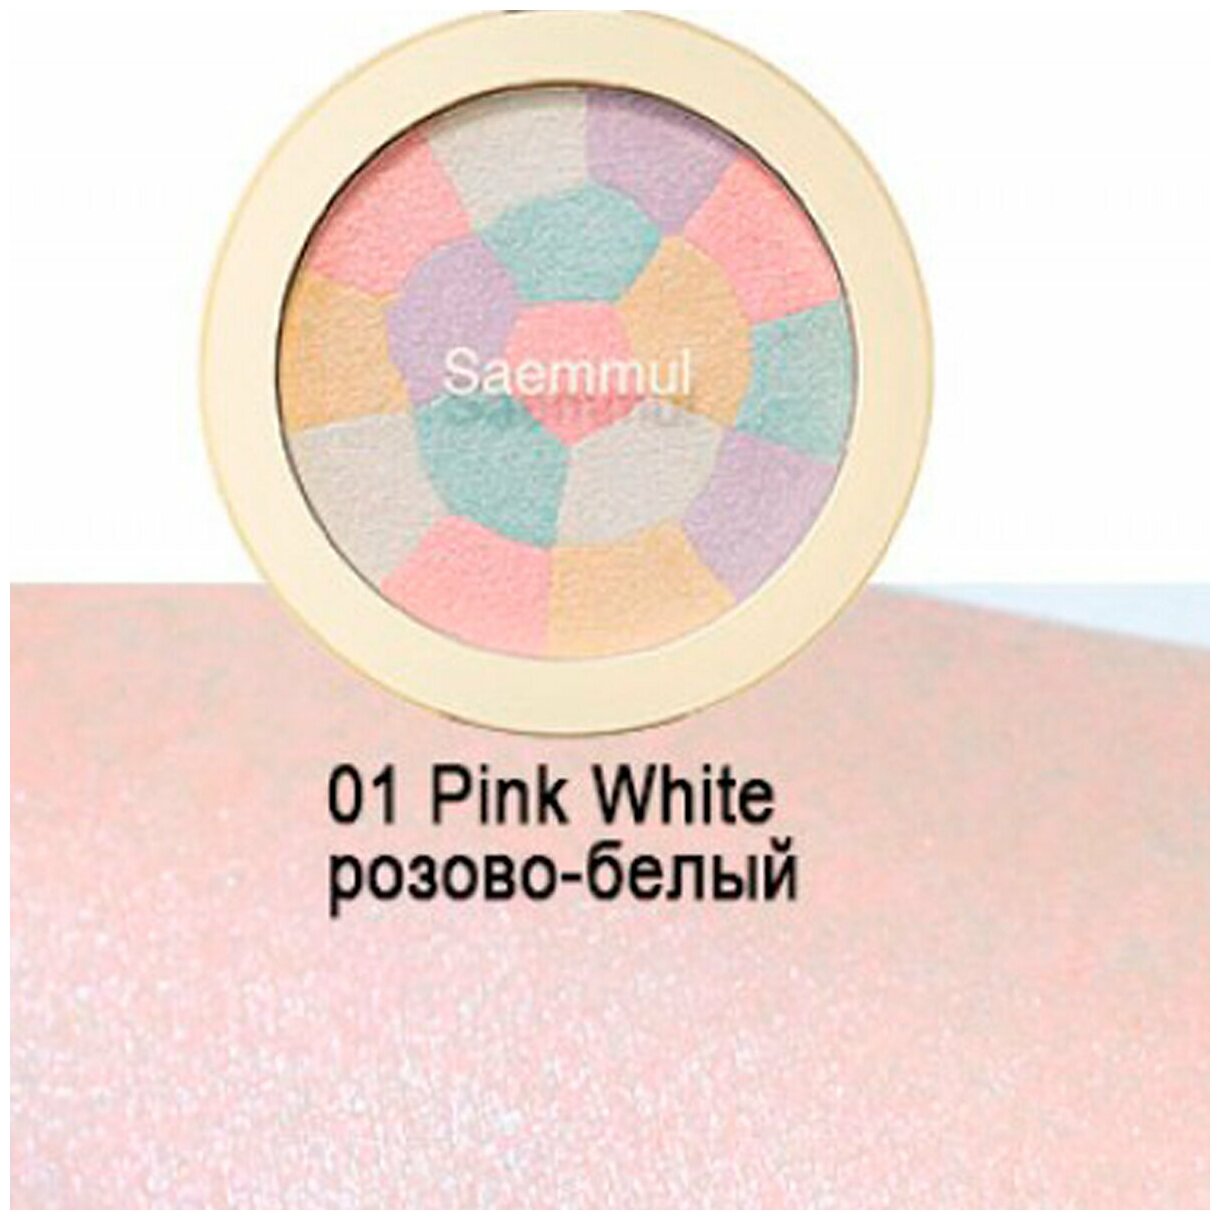 Хайлайтер для лица The Saem Saemmul Luminous Multi Highlighter 01 Pink White